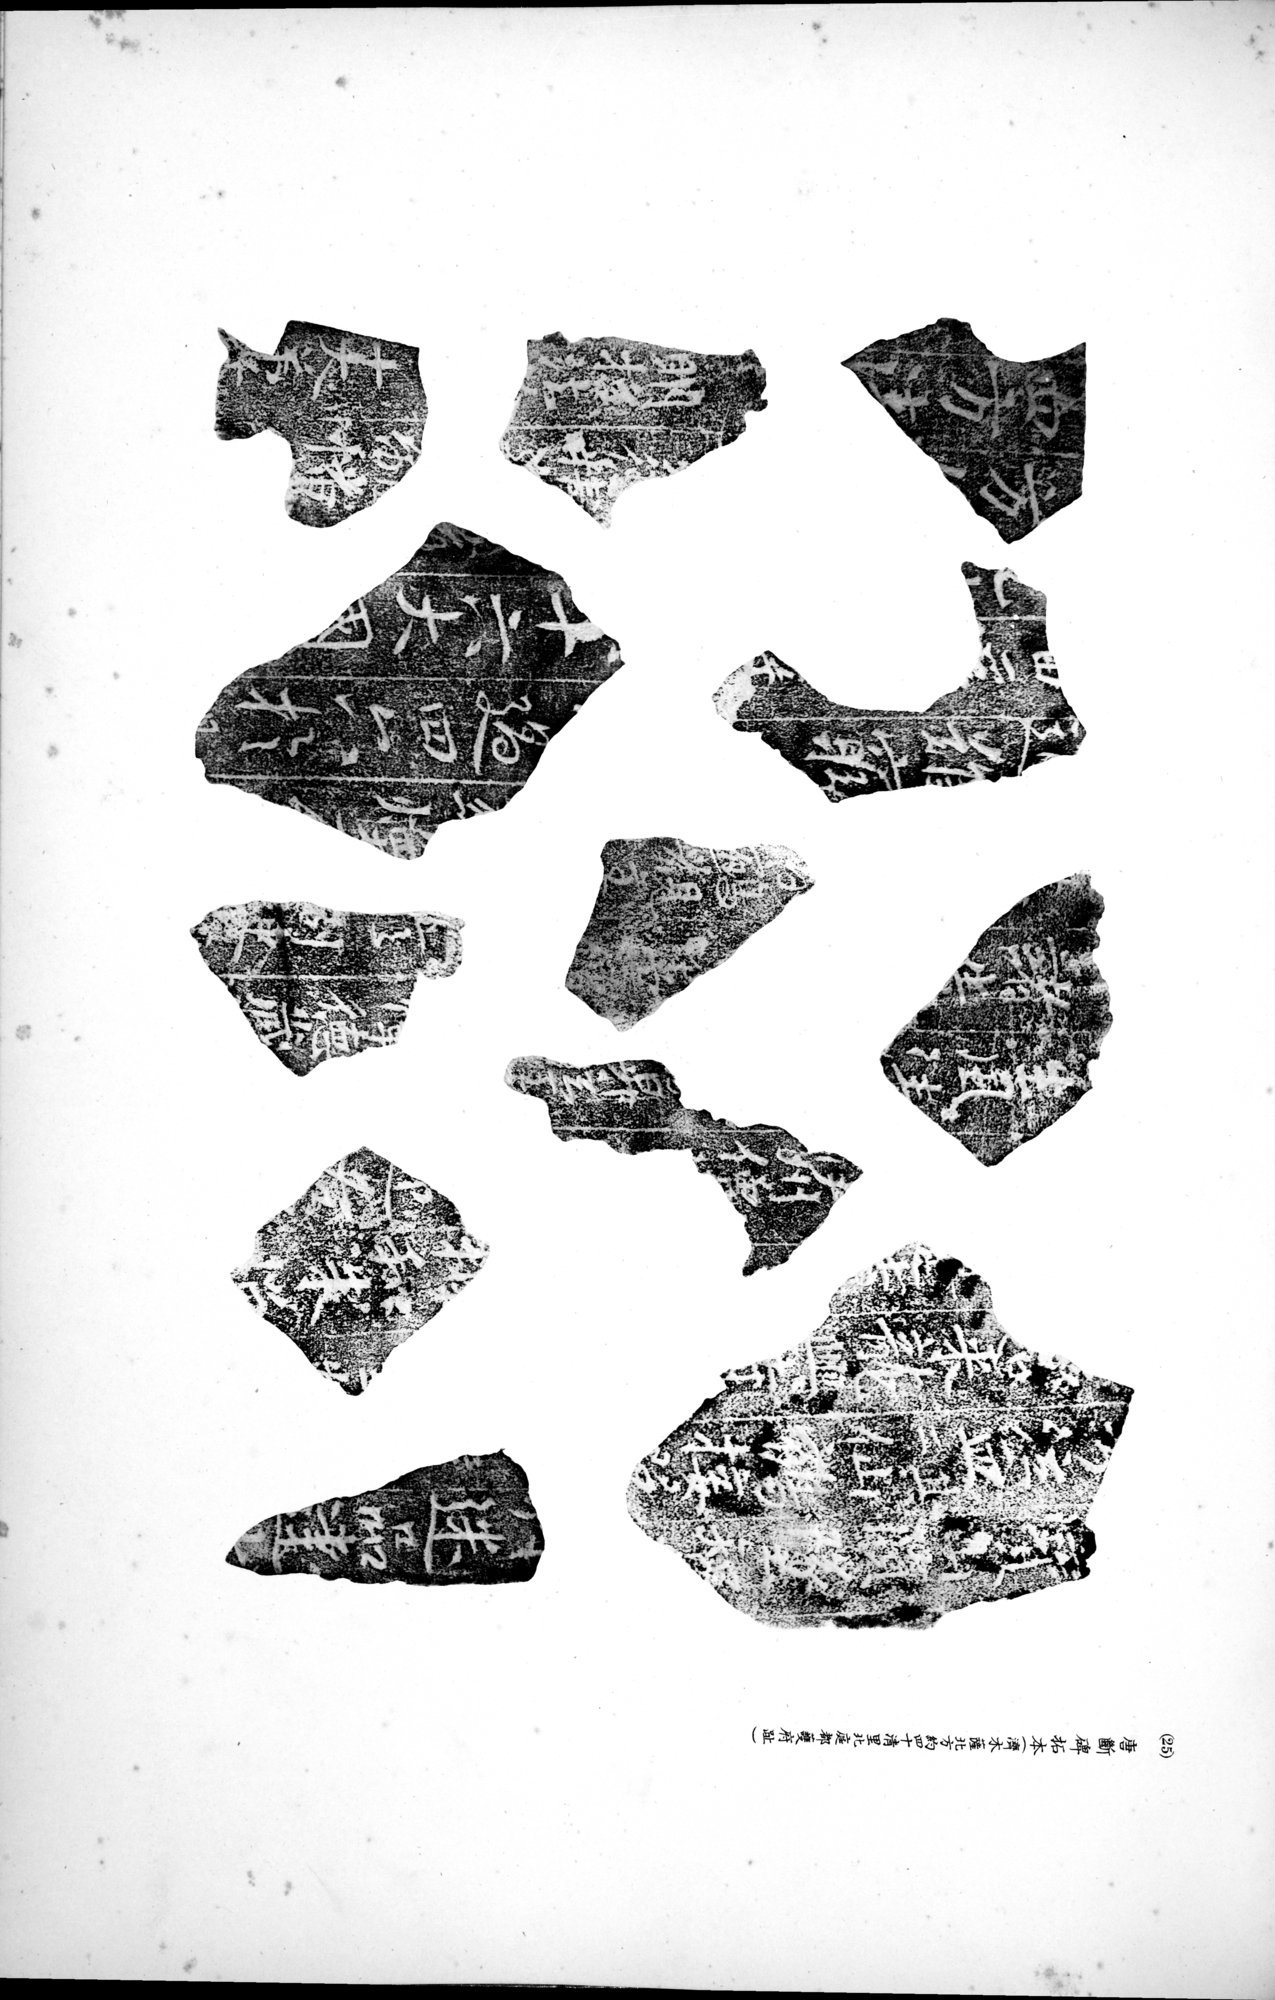 西域考古図譜 : vol.2 / Page 223 (Grayscale High Resolution Image)